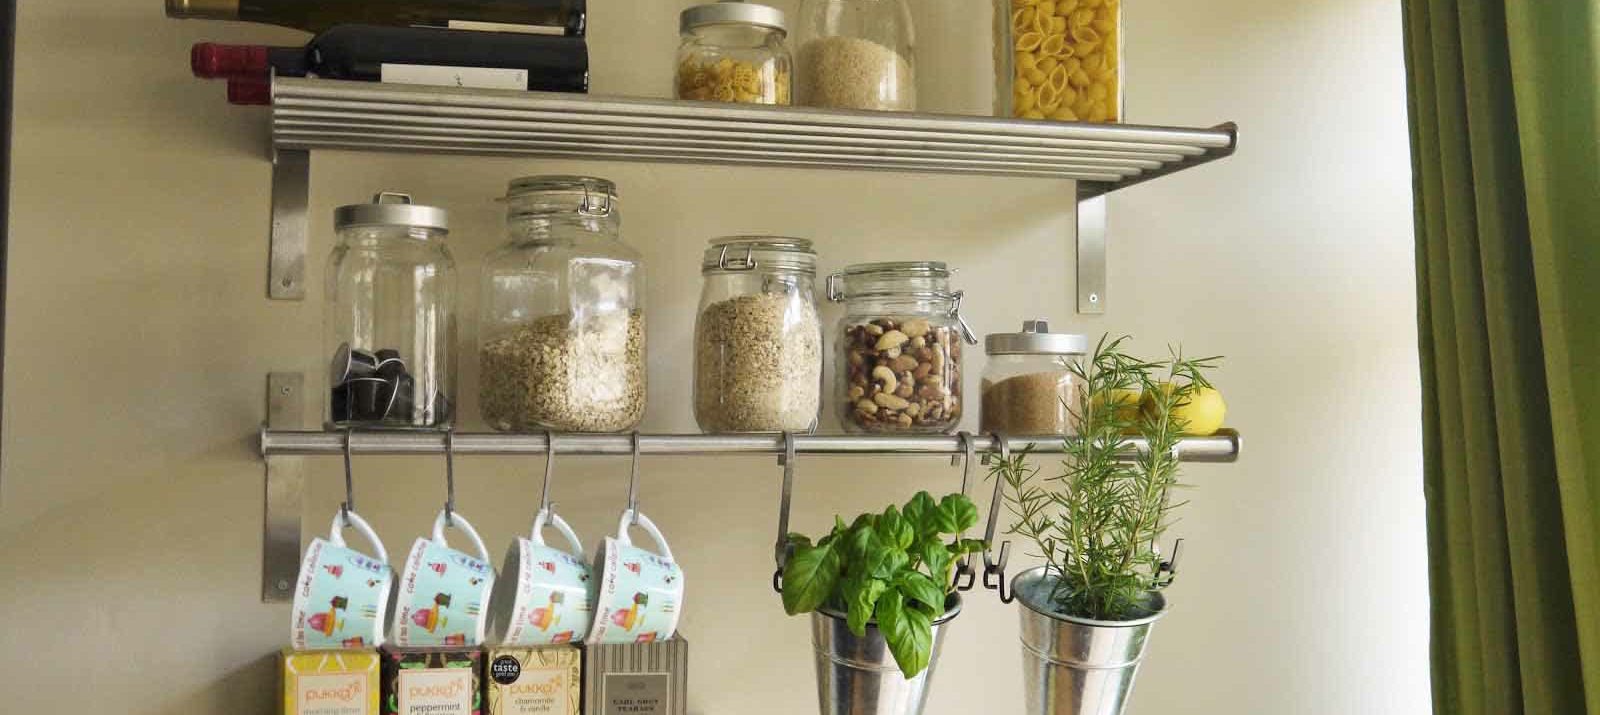 Easy kitchen organization ideas - IKEA